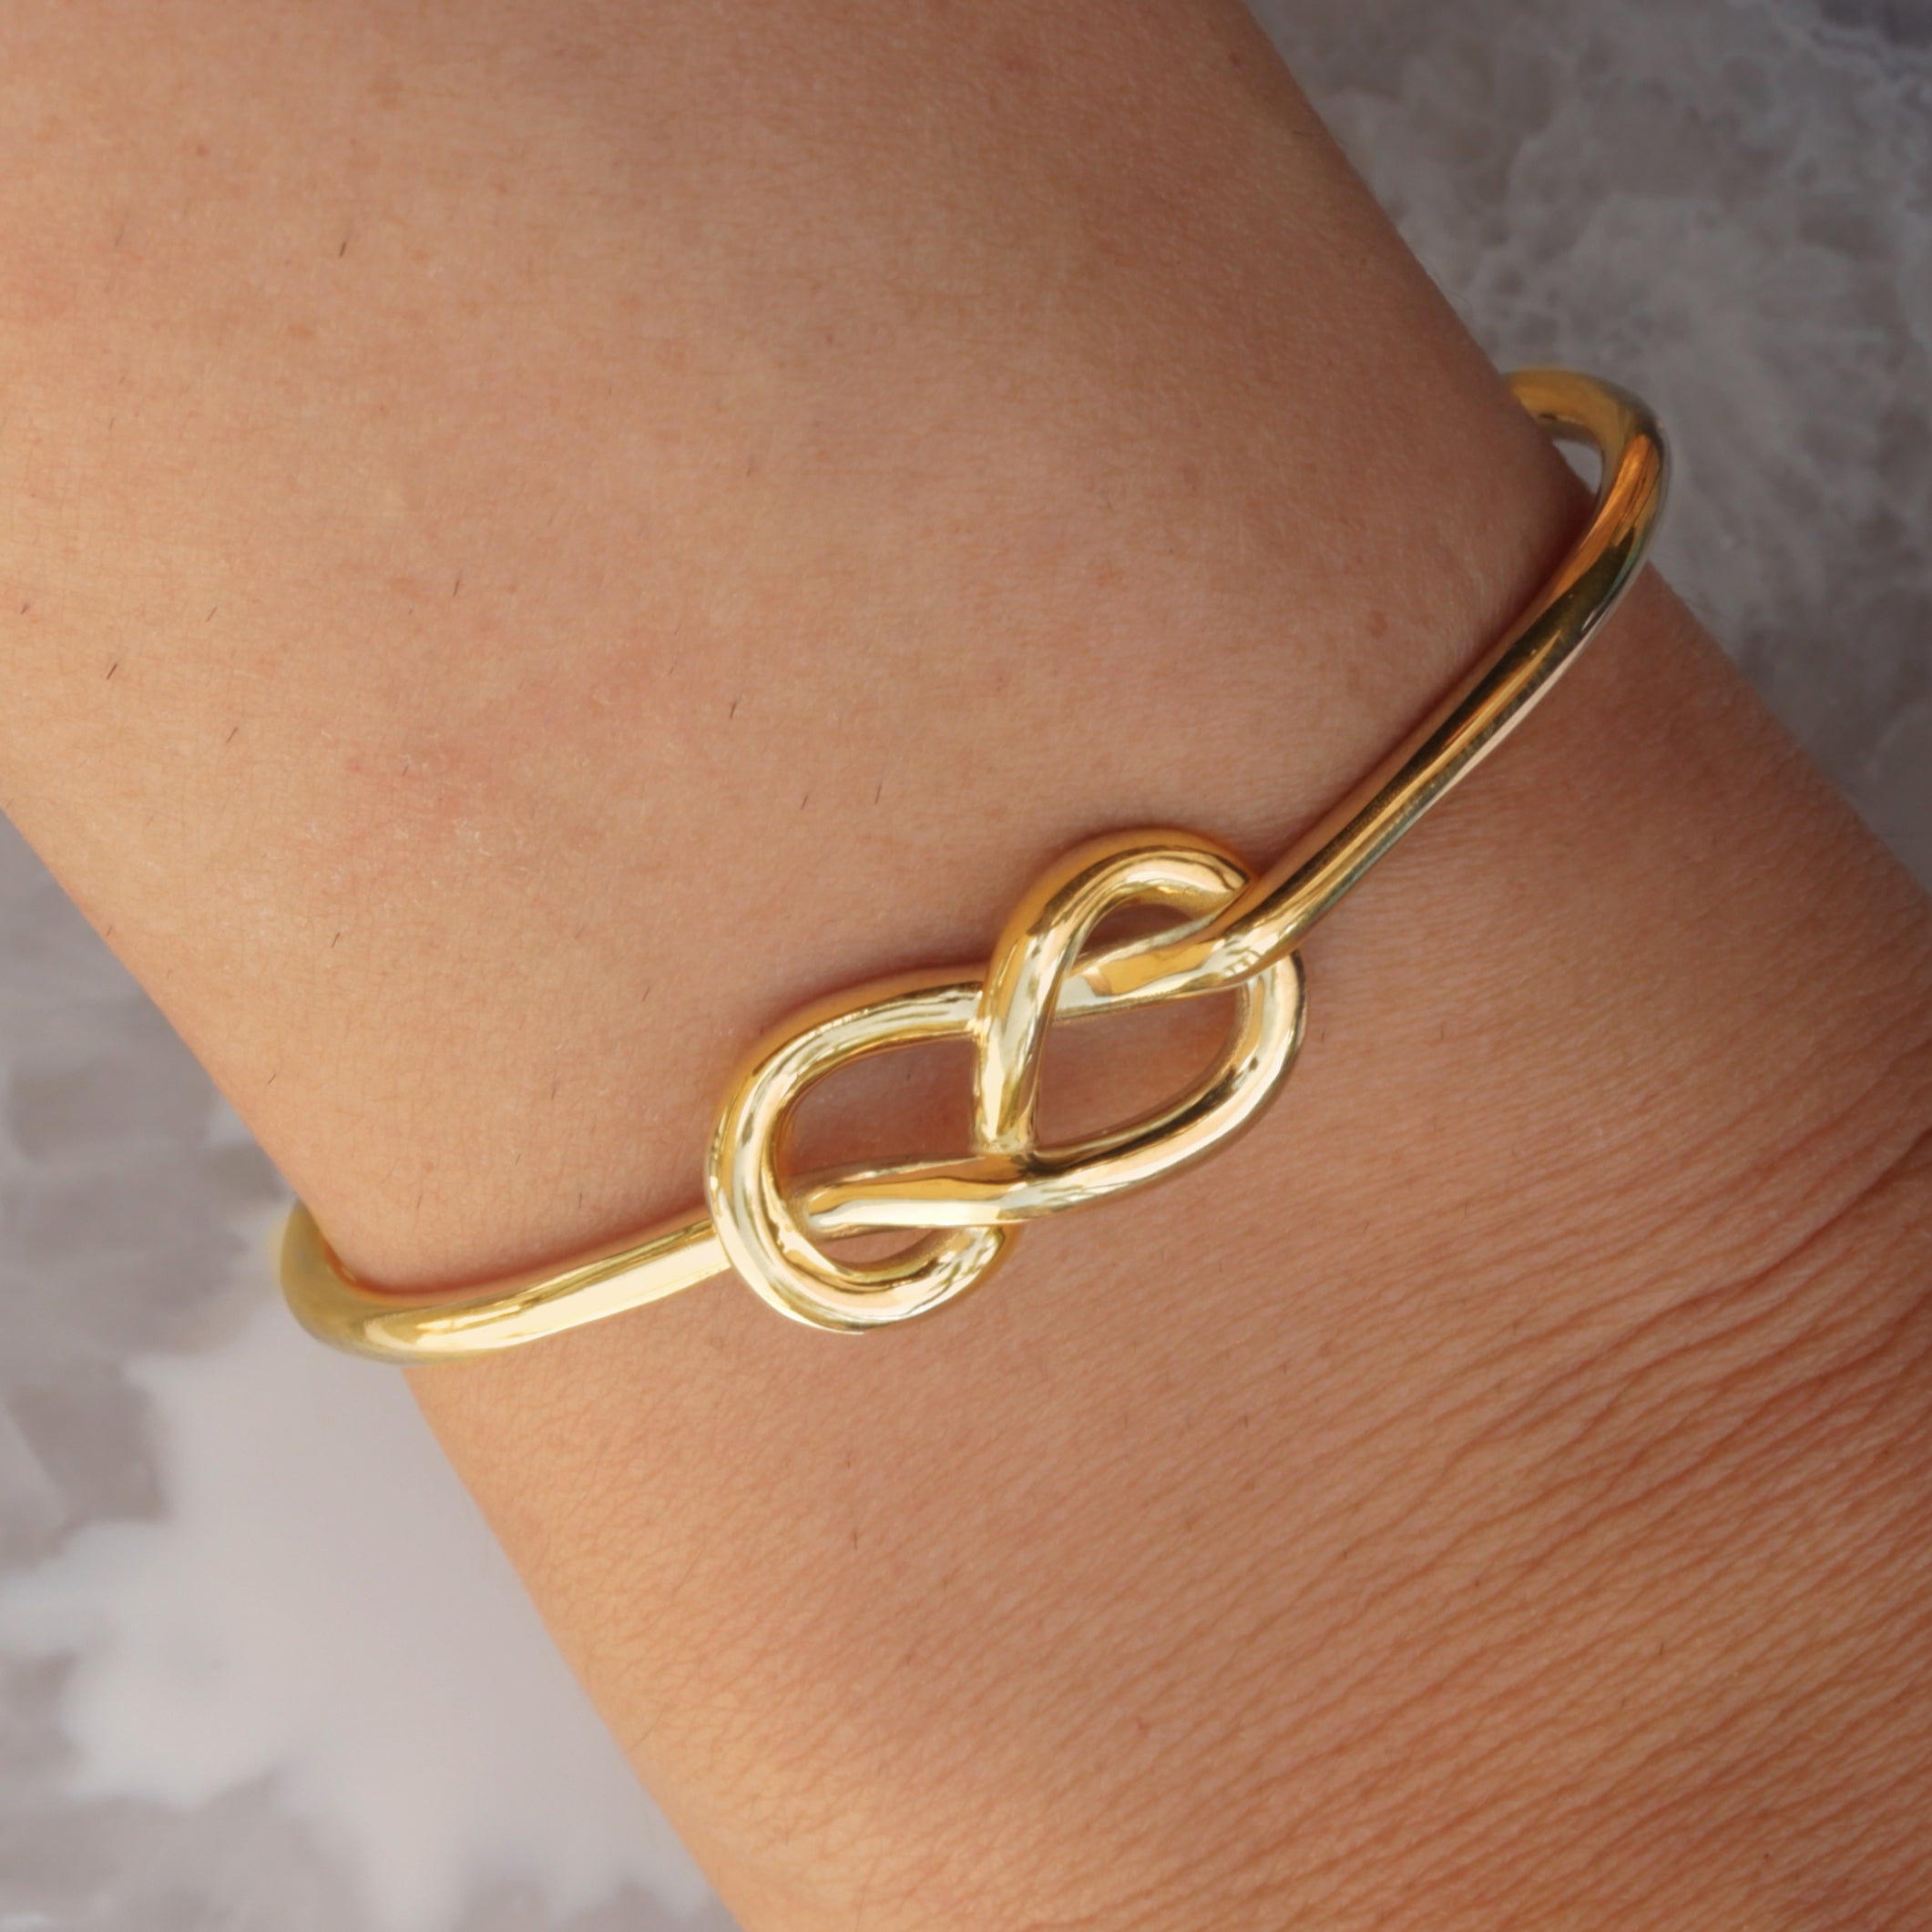 Small Infinity Knot Gold Cuff Bangle